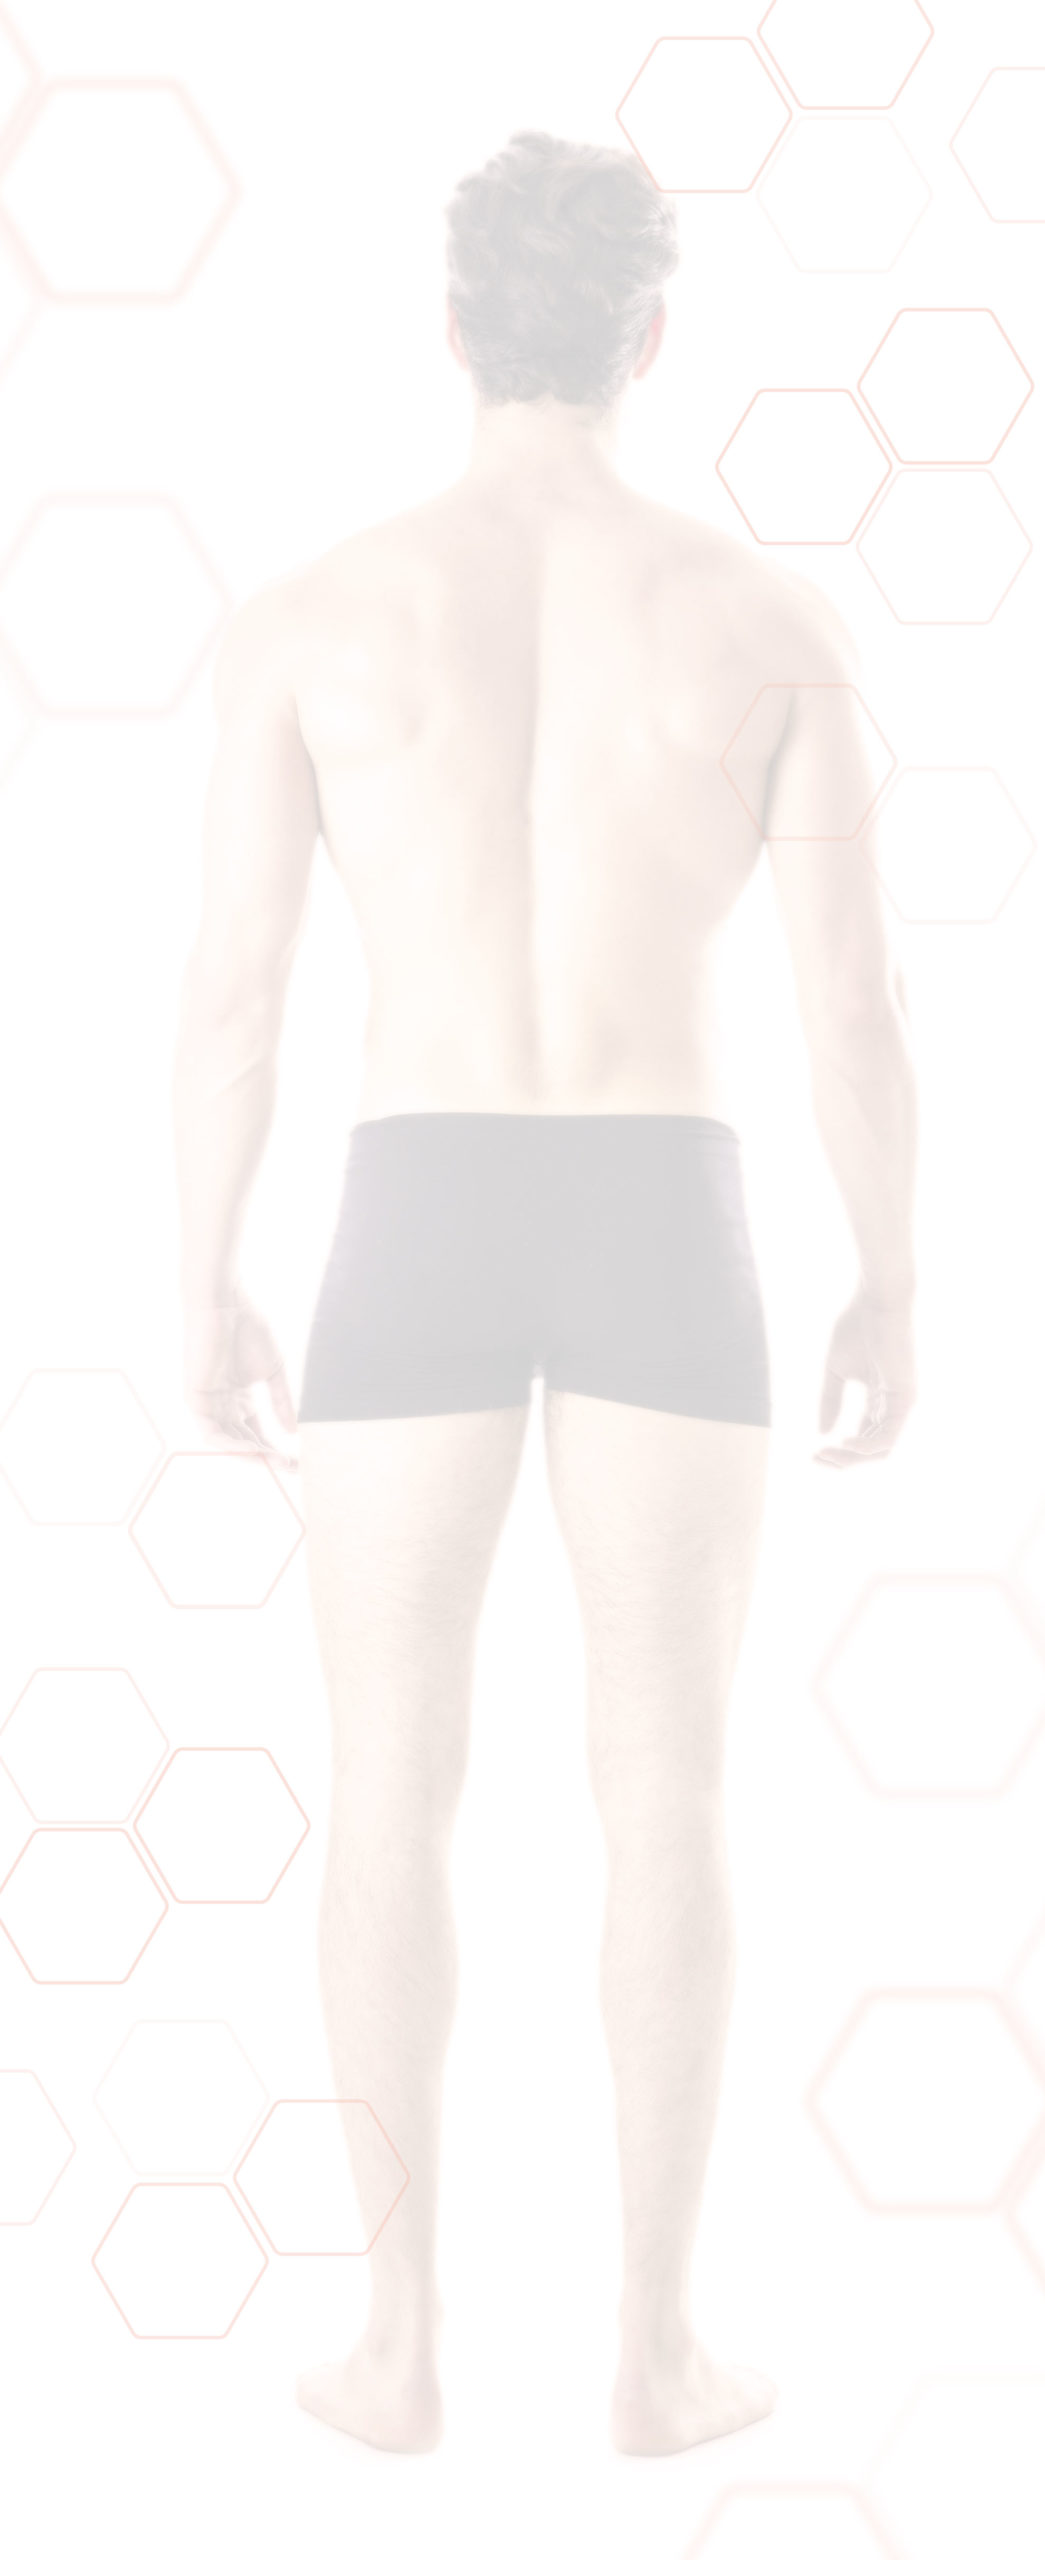 Hintergrundbild Körperregionen - Abbildung des Rückens und der Waden eines Mannes